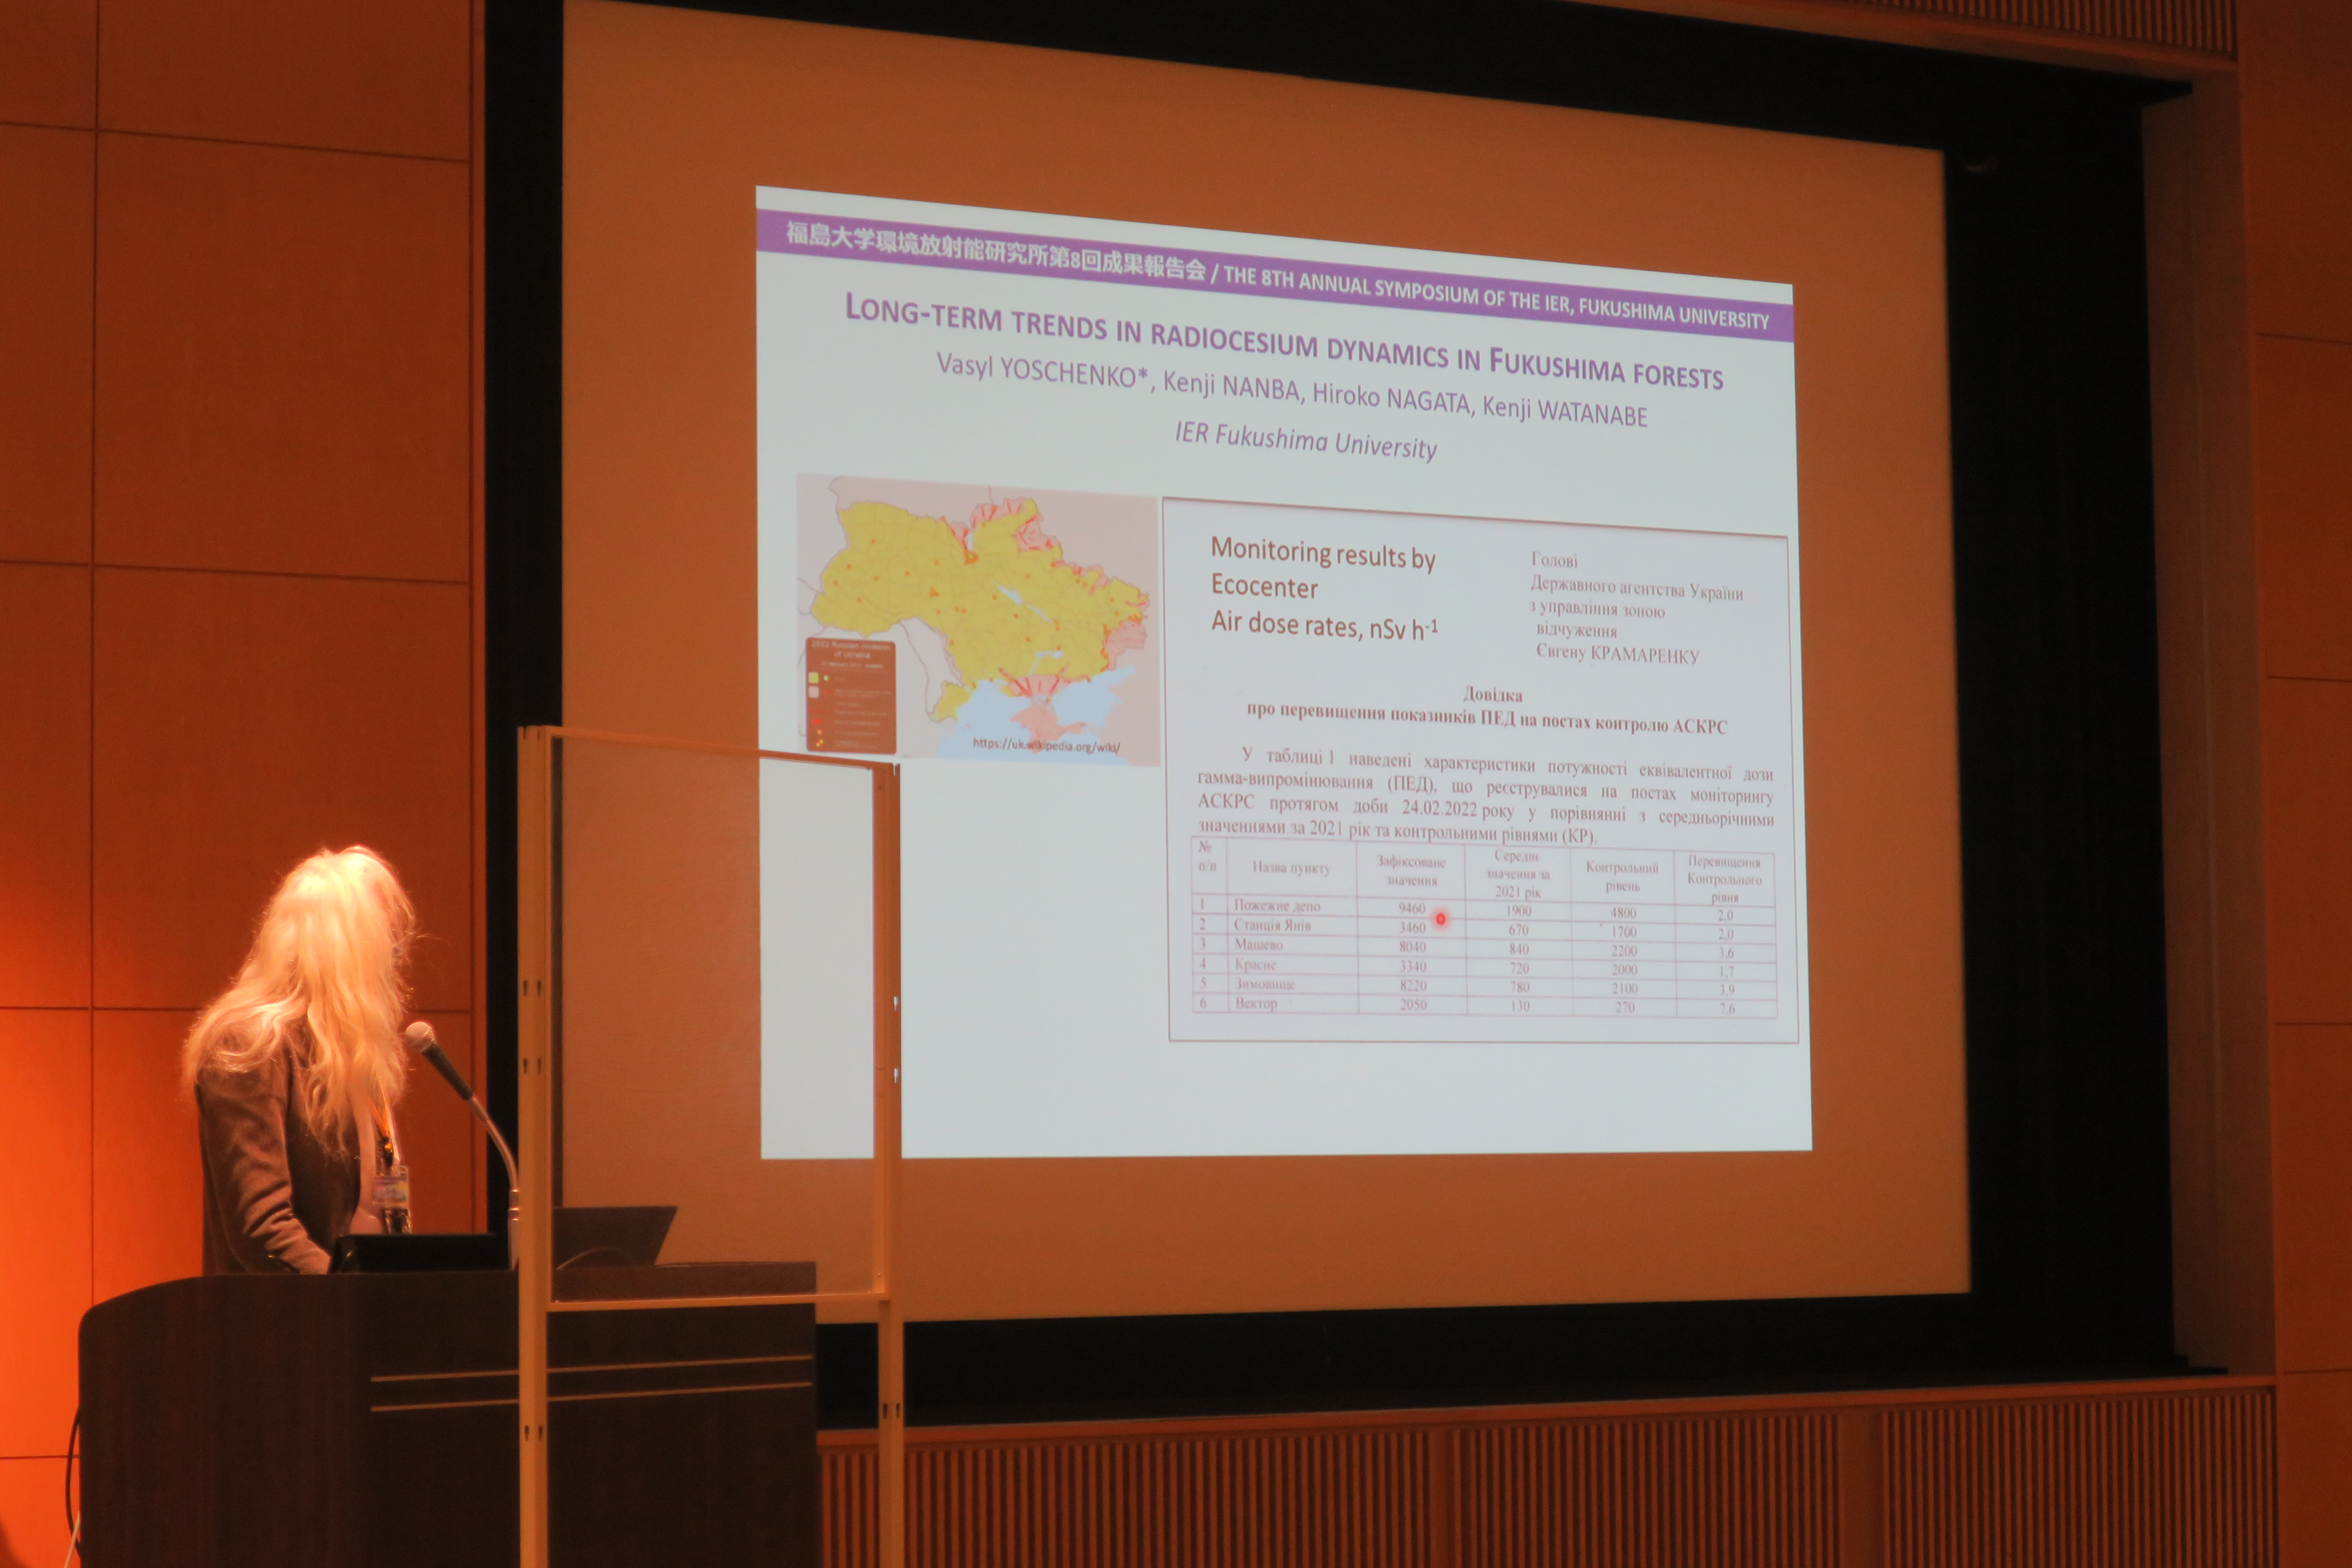 Prof. Yoschenko giving a presentation